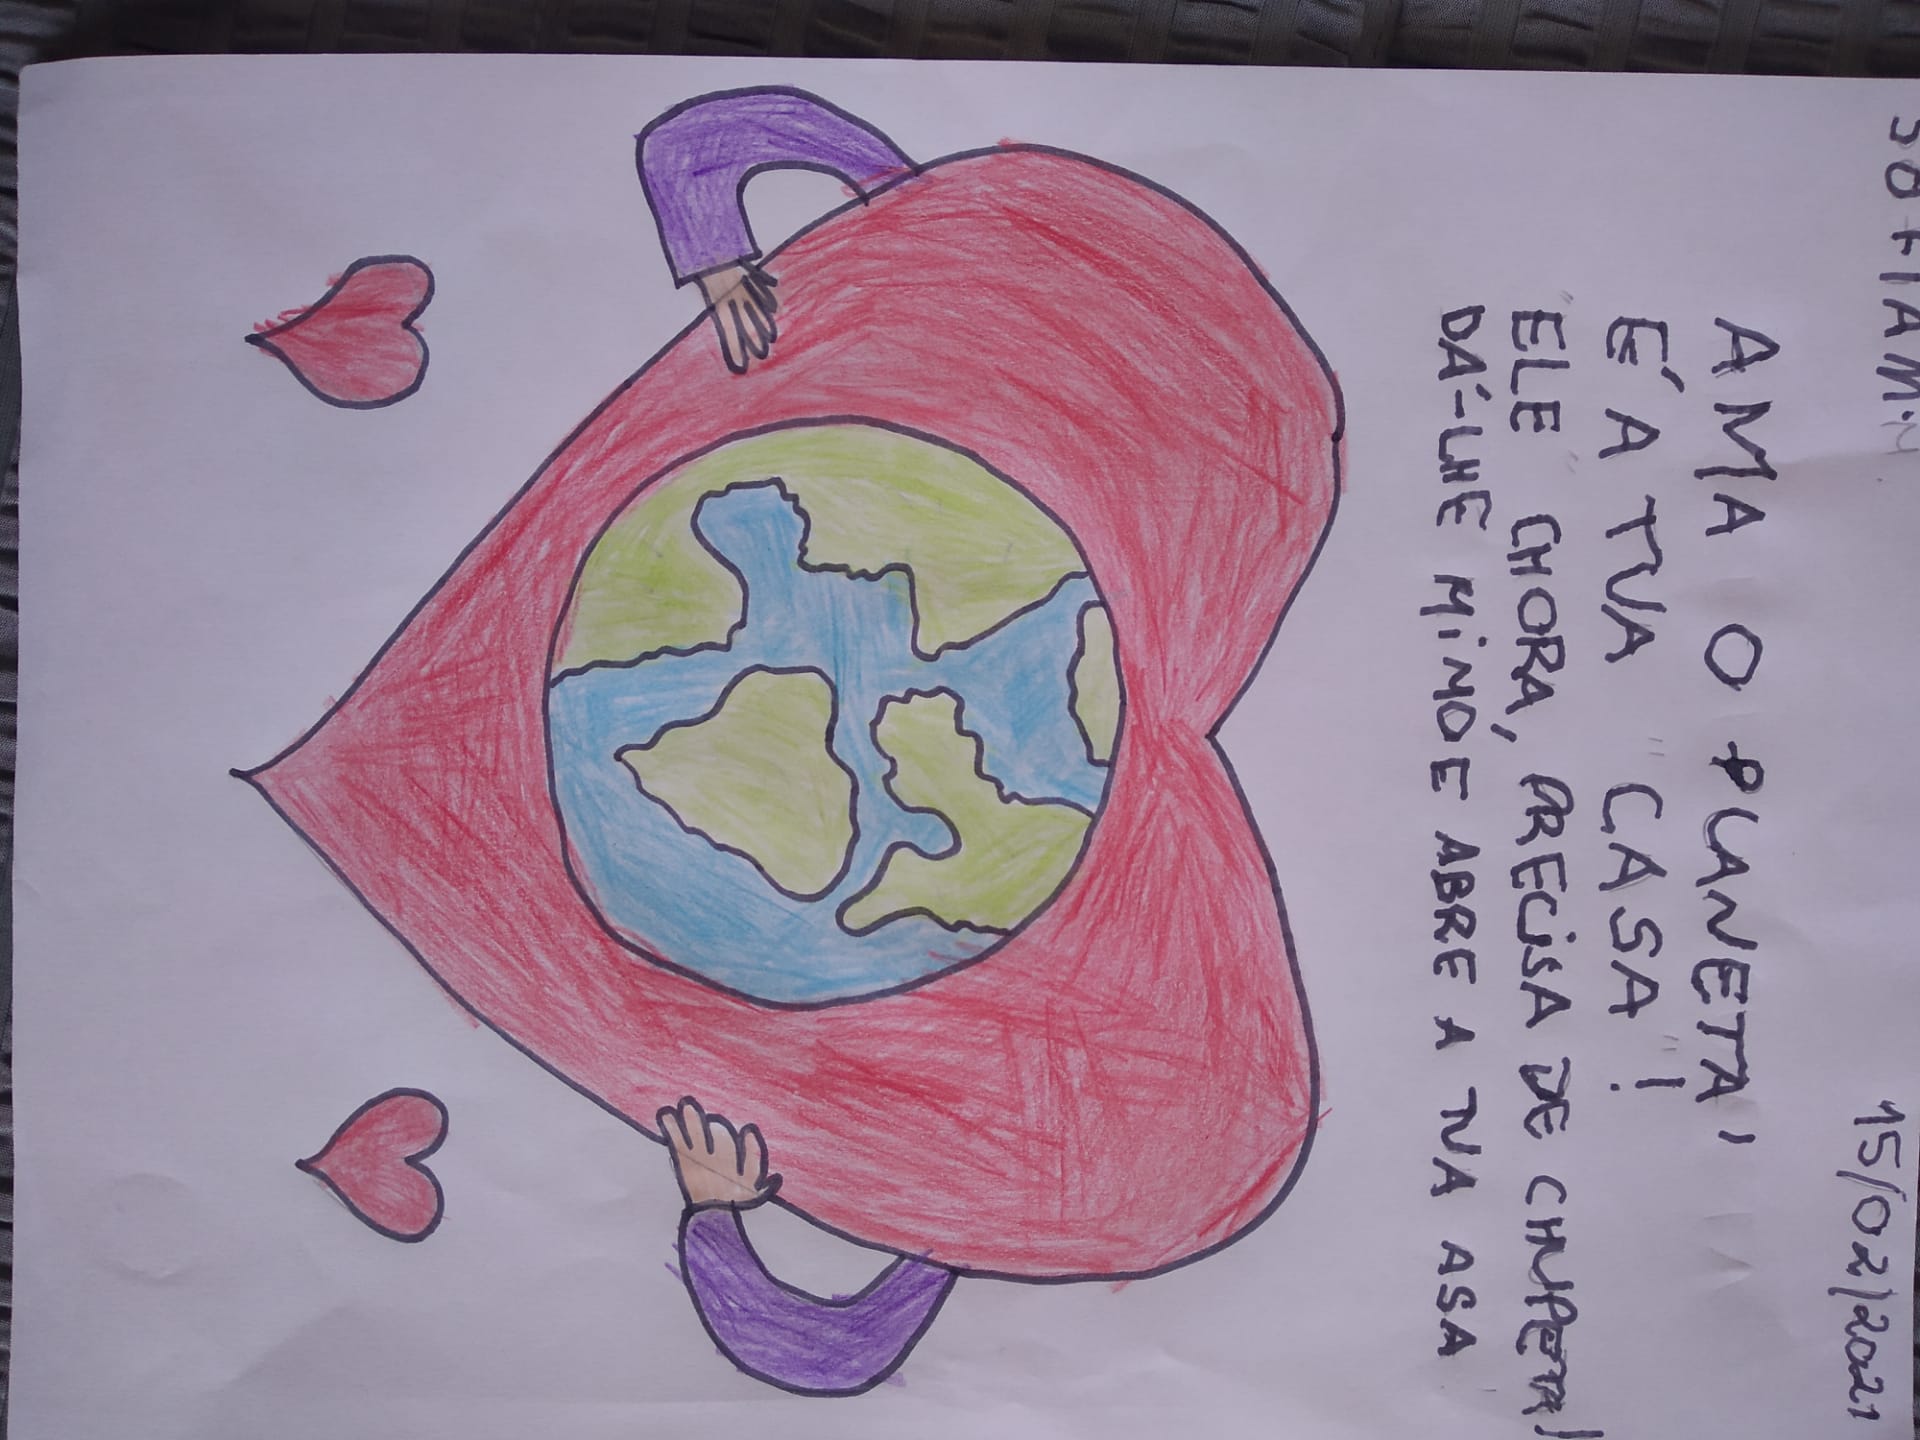 Sofia Martins, 1.º ano<br/><br/>Ama o planeta,<br />
É a tua casa!<br />
Ele chora, precisa de chupeta!<br />
Dá-lhe mimo e abre a tua asa.